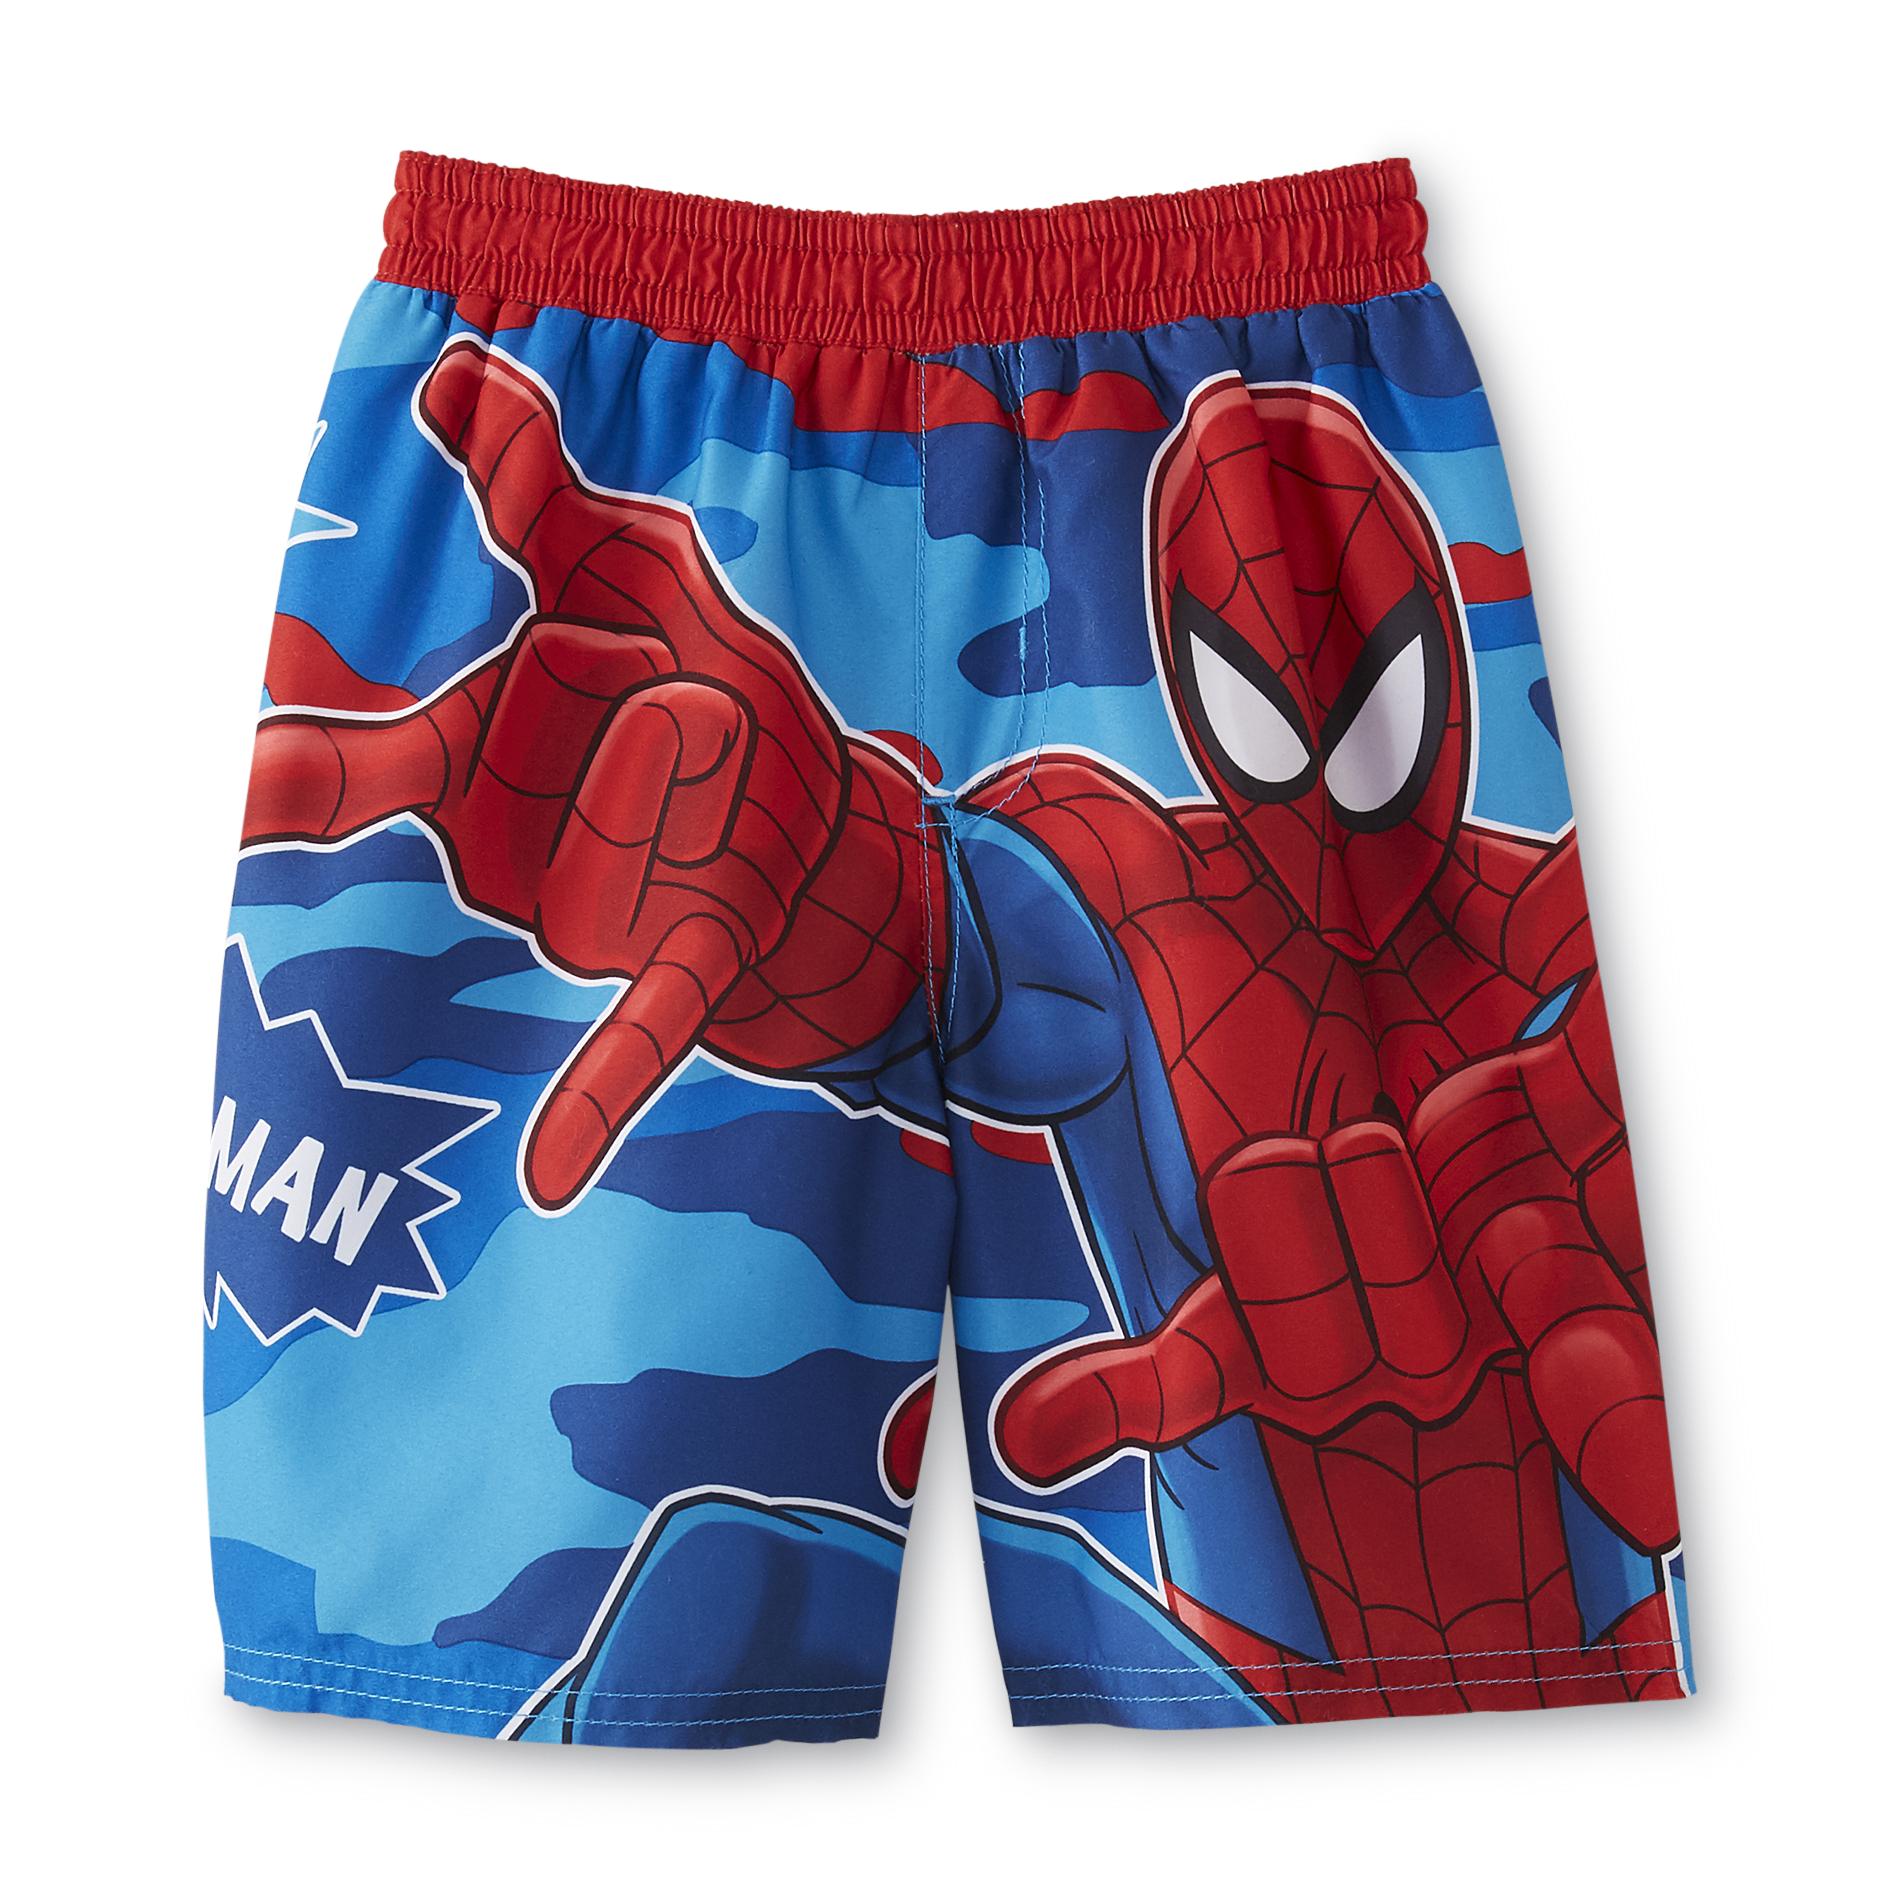 Marvel SpiderMan Toddler Boy's Swim Trunks Kmart